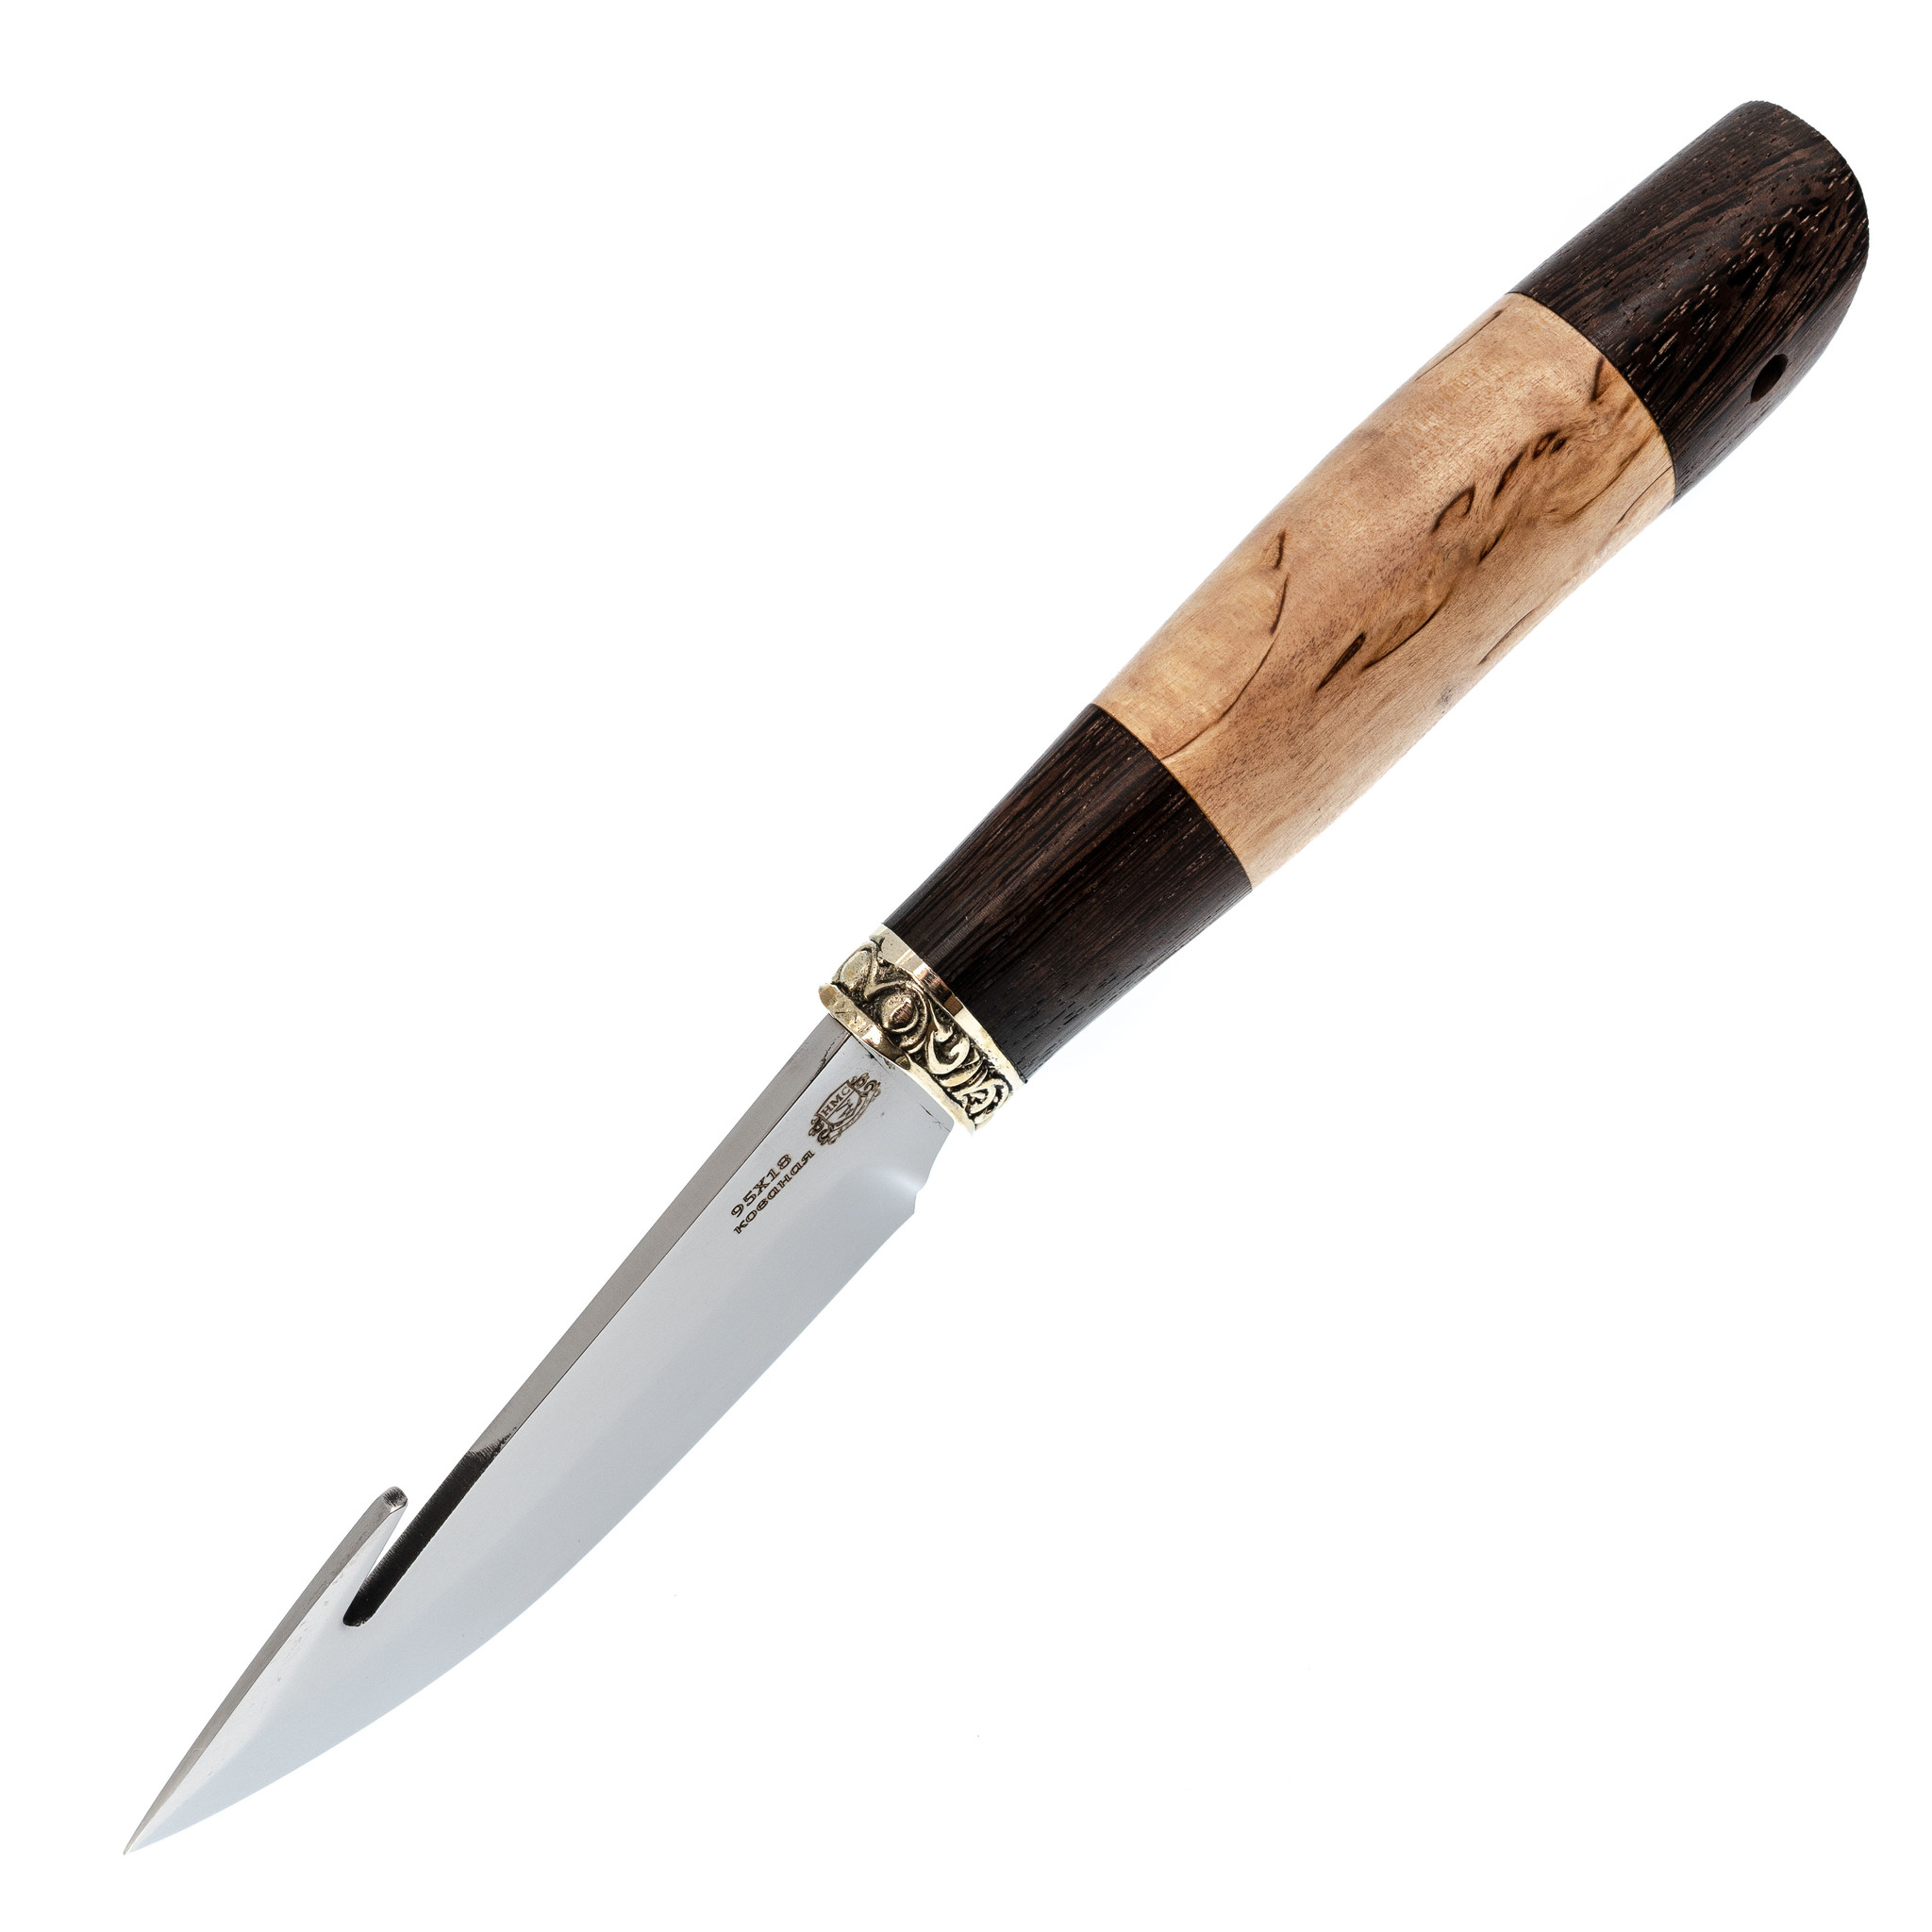 Нож Шкуросъемный с крюком, сталь 95Х18, рукоять карельская береза/венге - фото 2